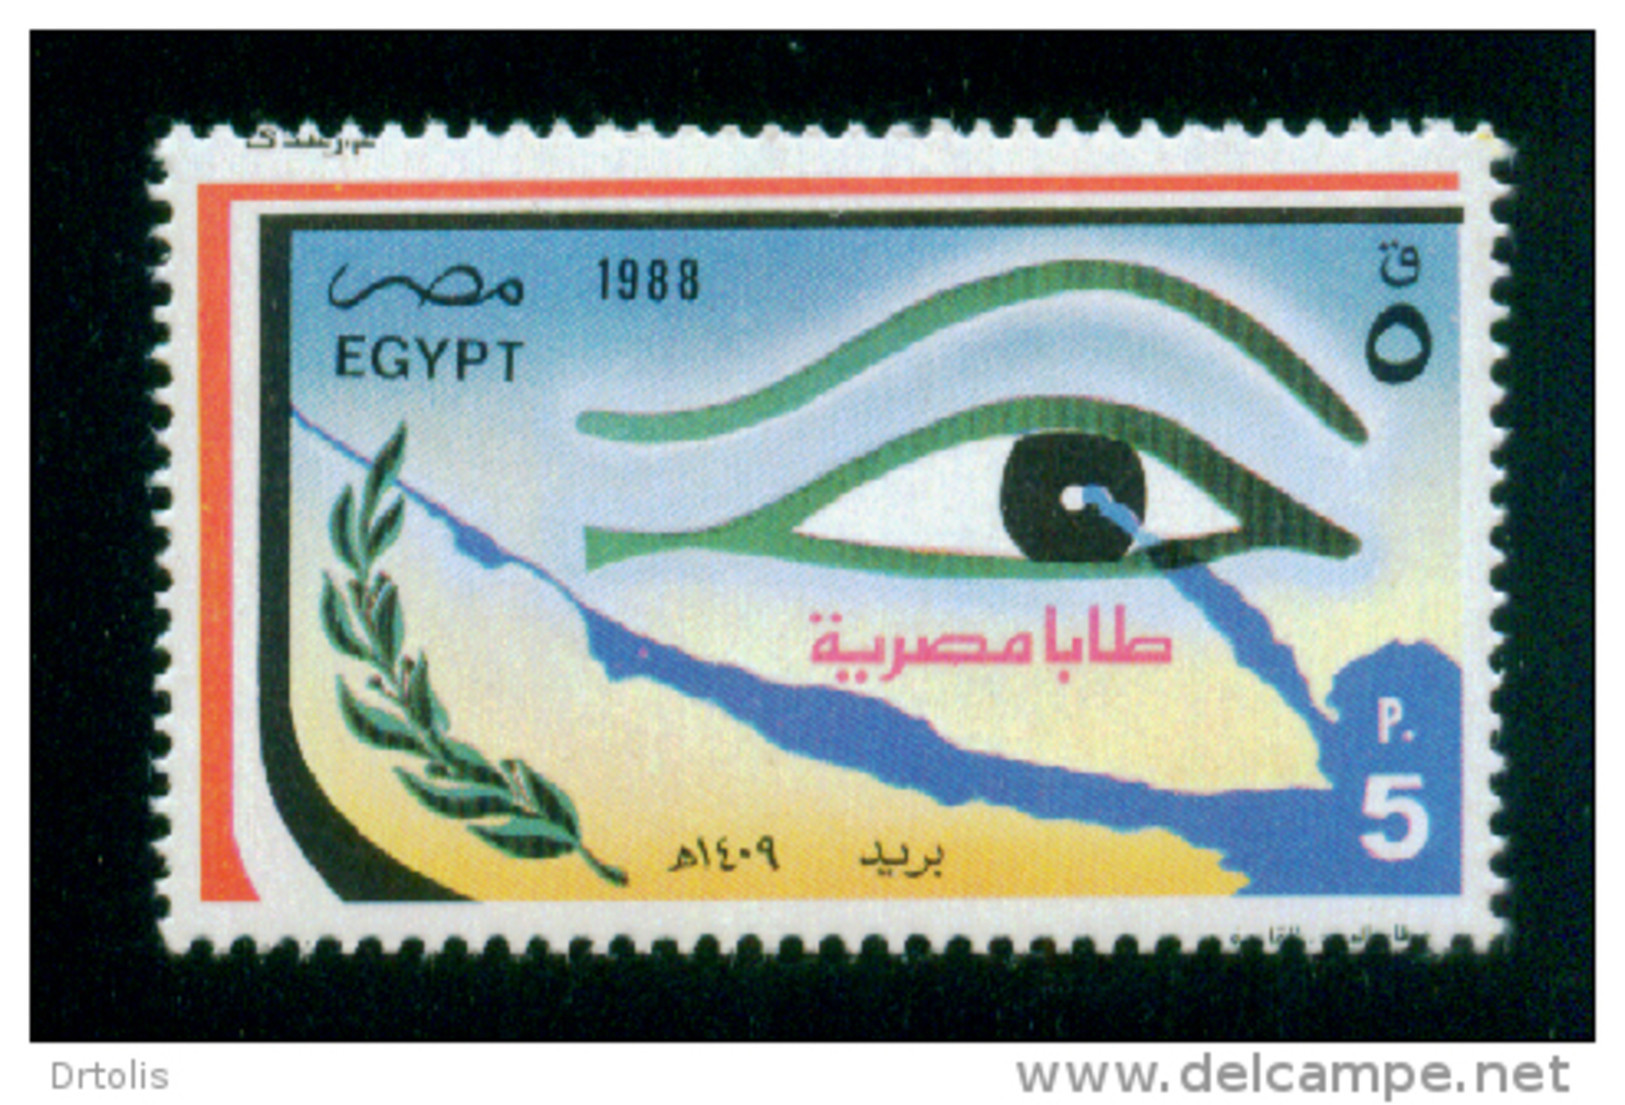 EGYPT / 1988 / RESTORATION OF TABA / MAP / FLAG / OLIVE BRANCH / PHARAONIC EYE / MNH / VF - Neufs